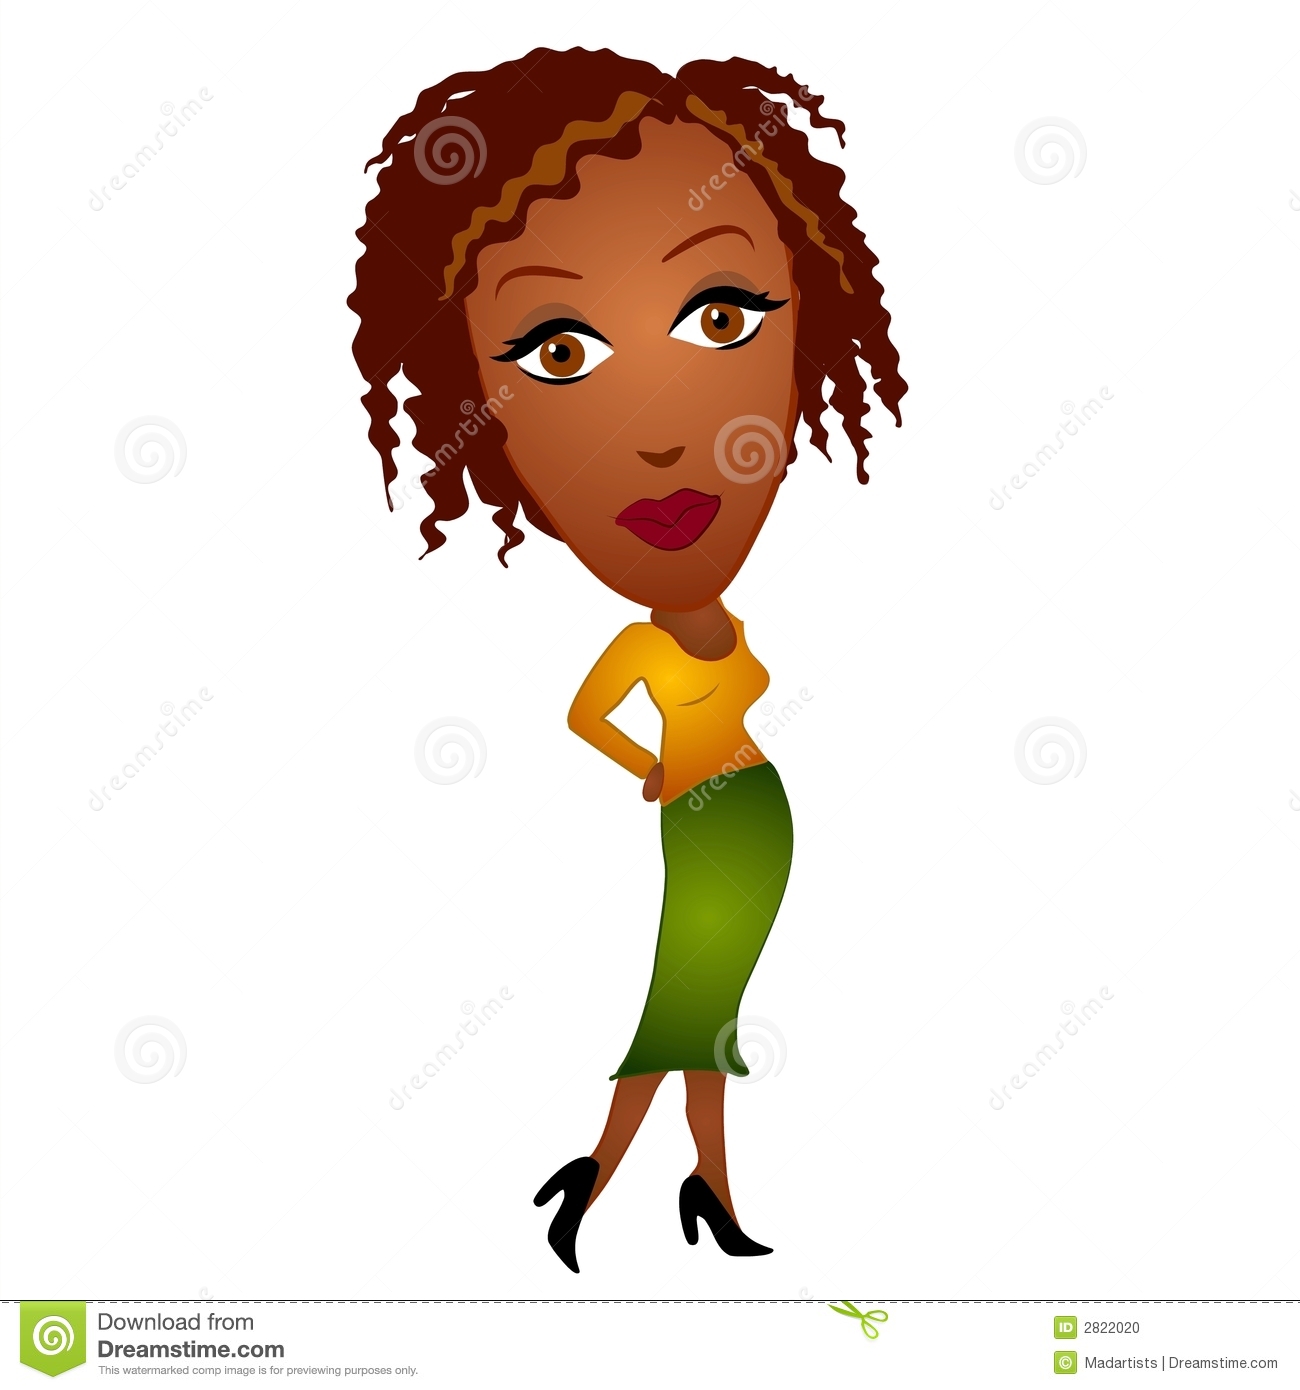 Une Illustration De Clipart  Images Graphiques  D Une Femme D Afro